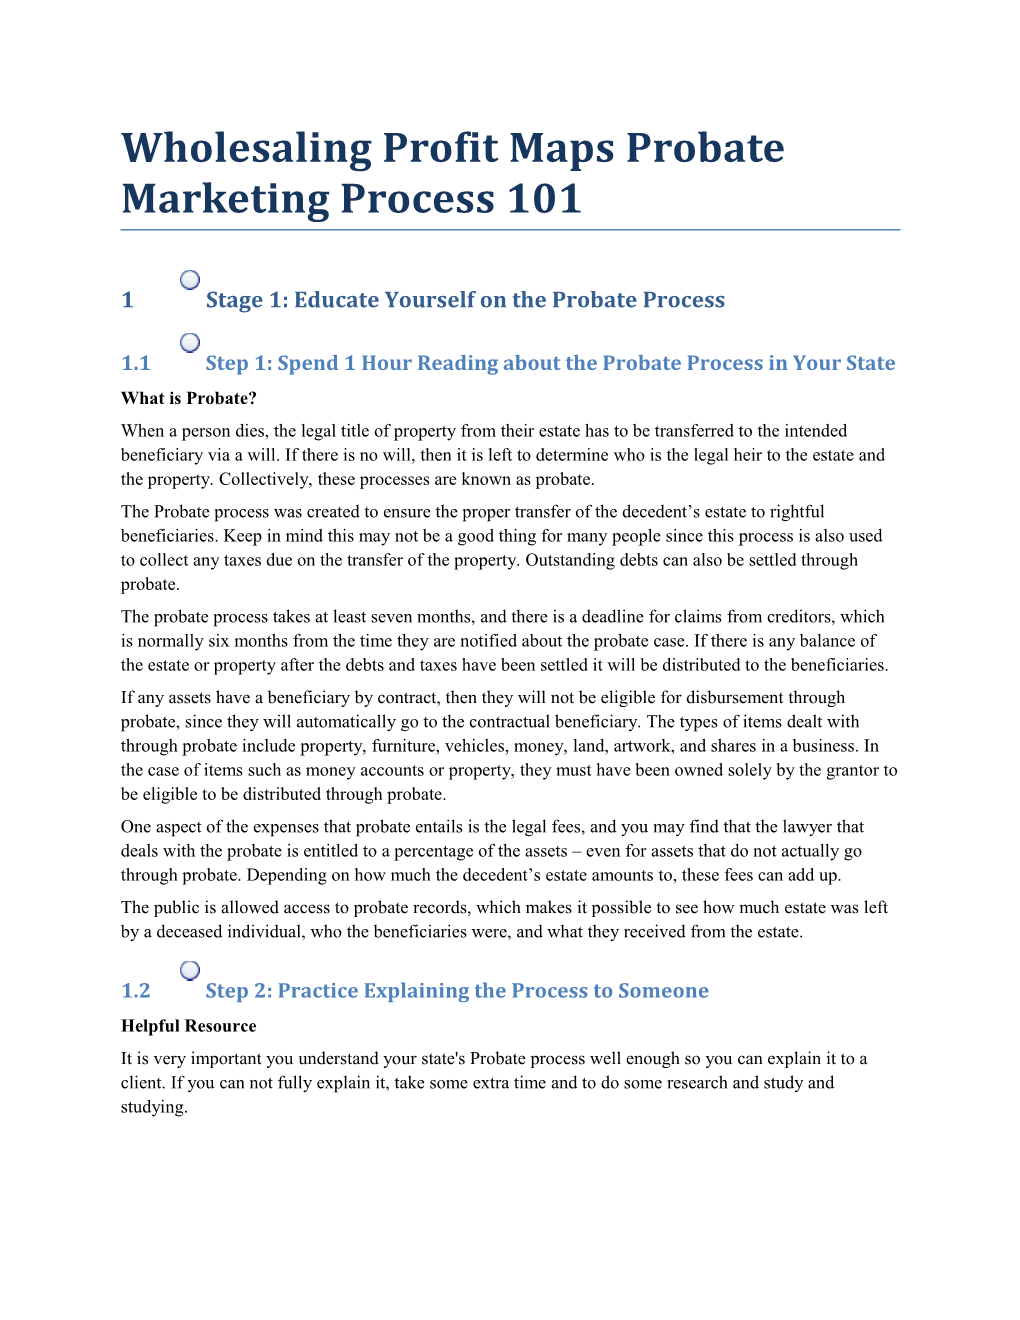 Wholesaling Profit Maps Probate Marketing Process 101